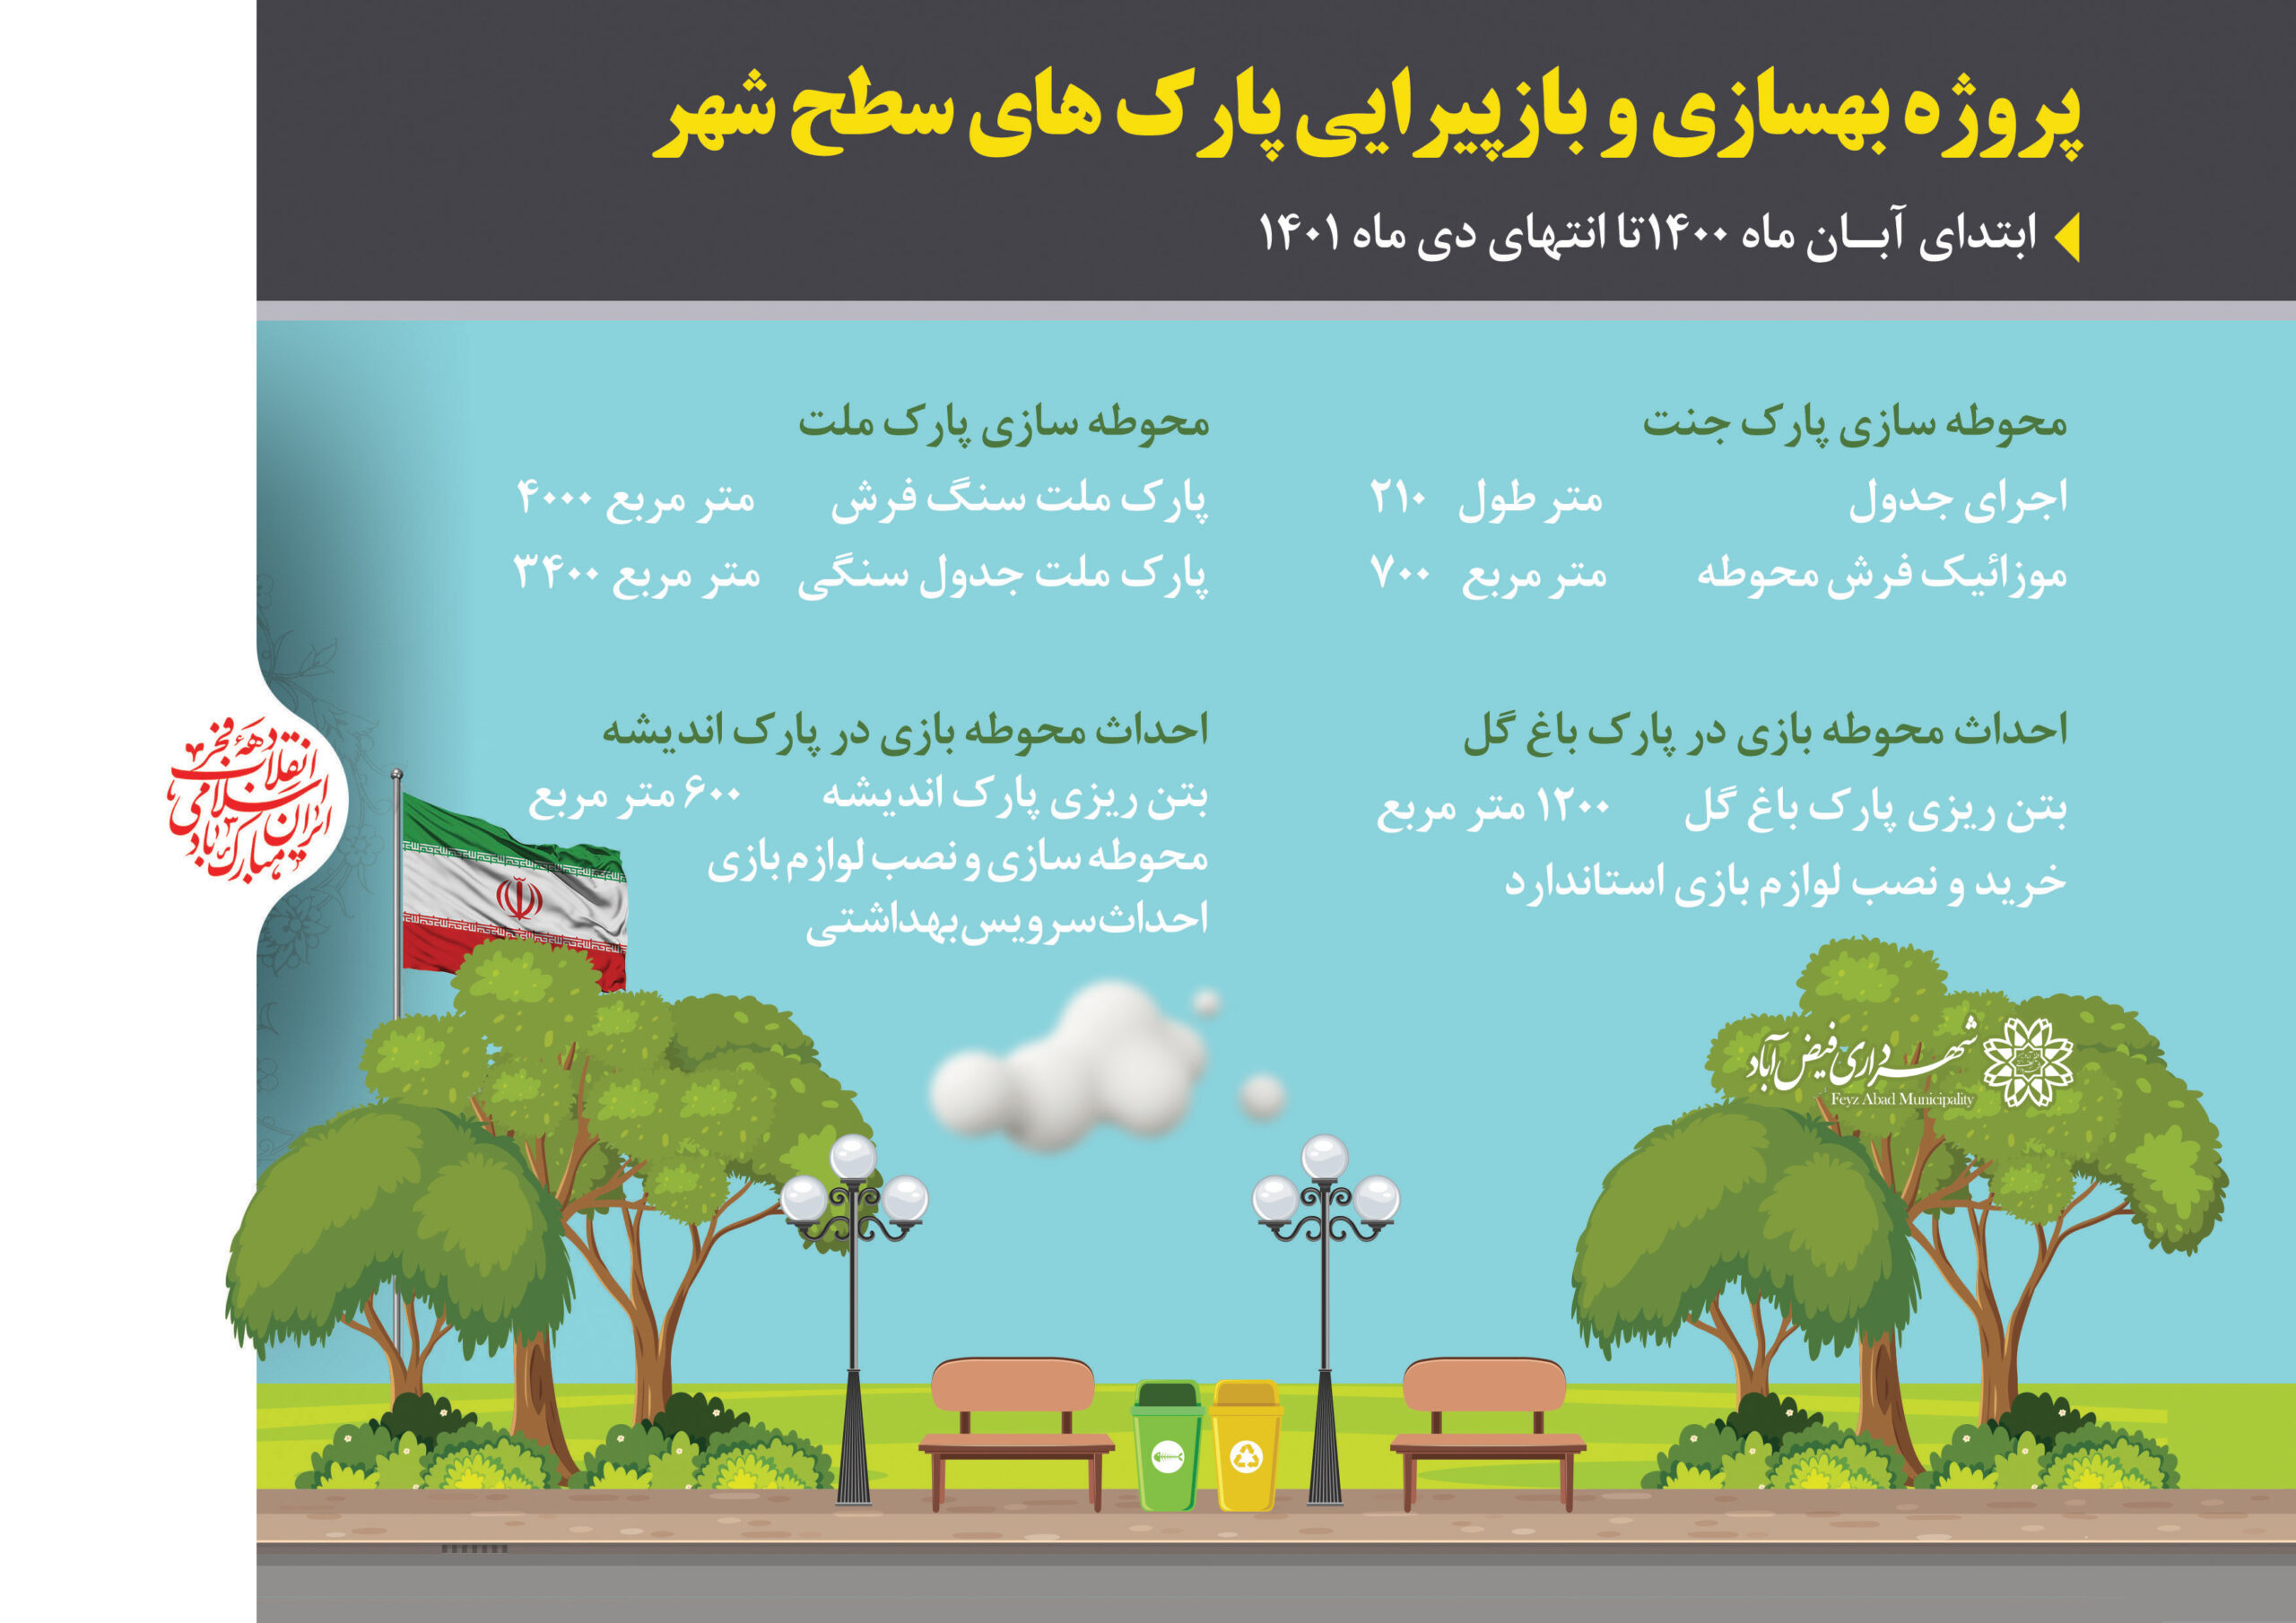 اینفوگرافیک و گزارش اقدامات شهرداری در حوزه بهسازی پارک های شهر فیض آباد